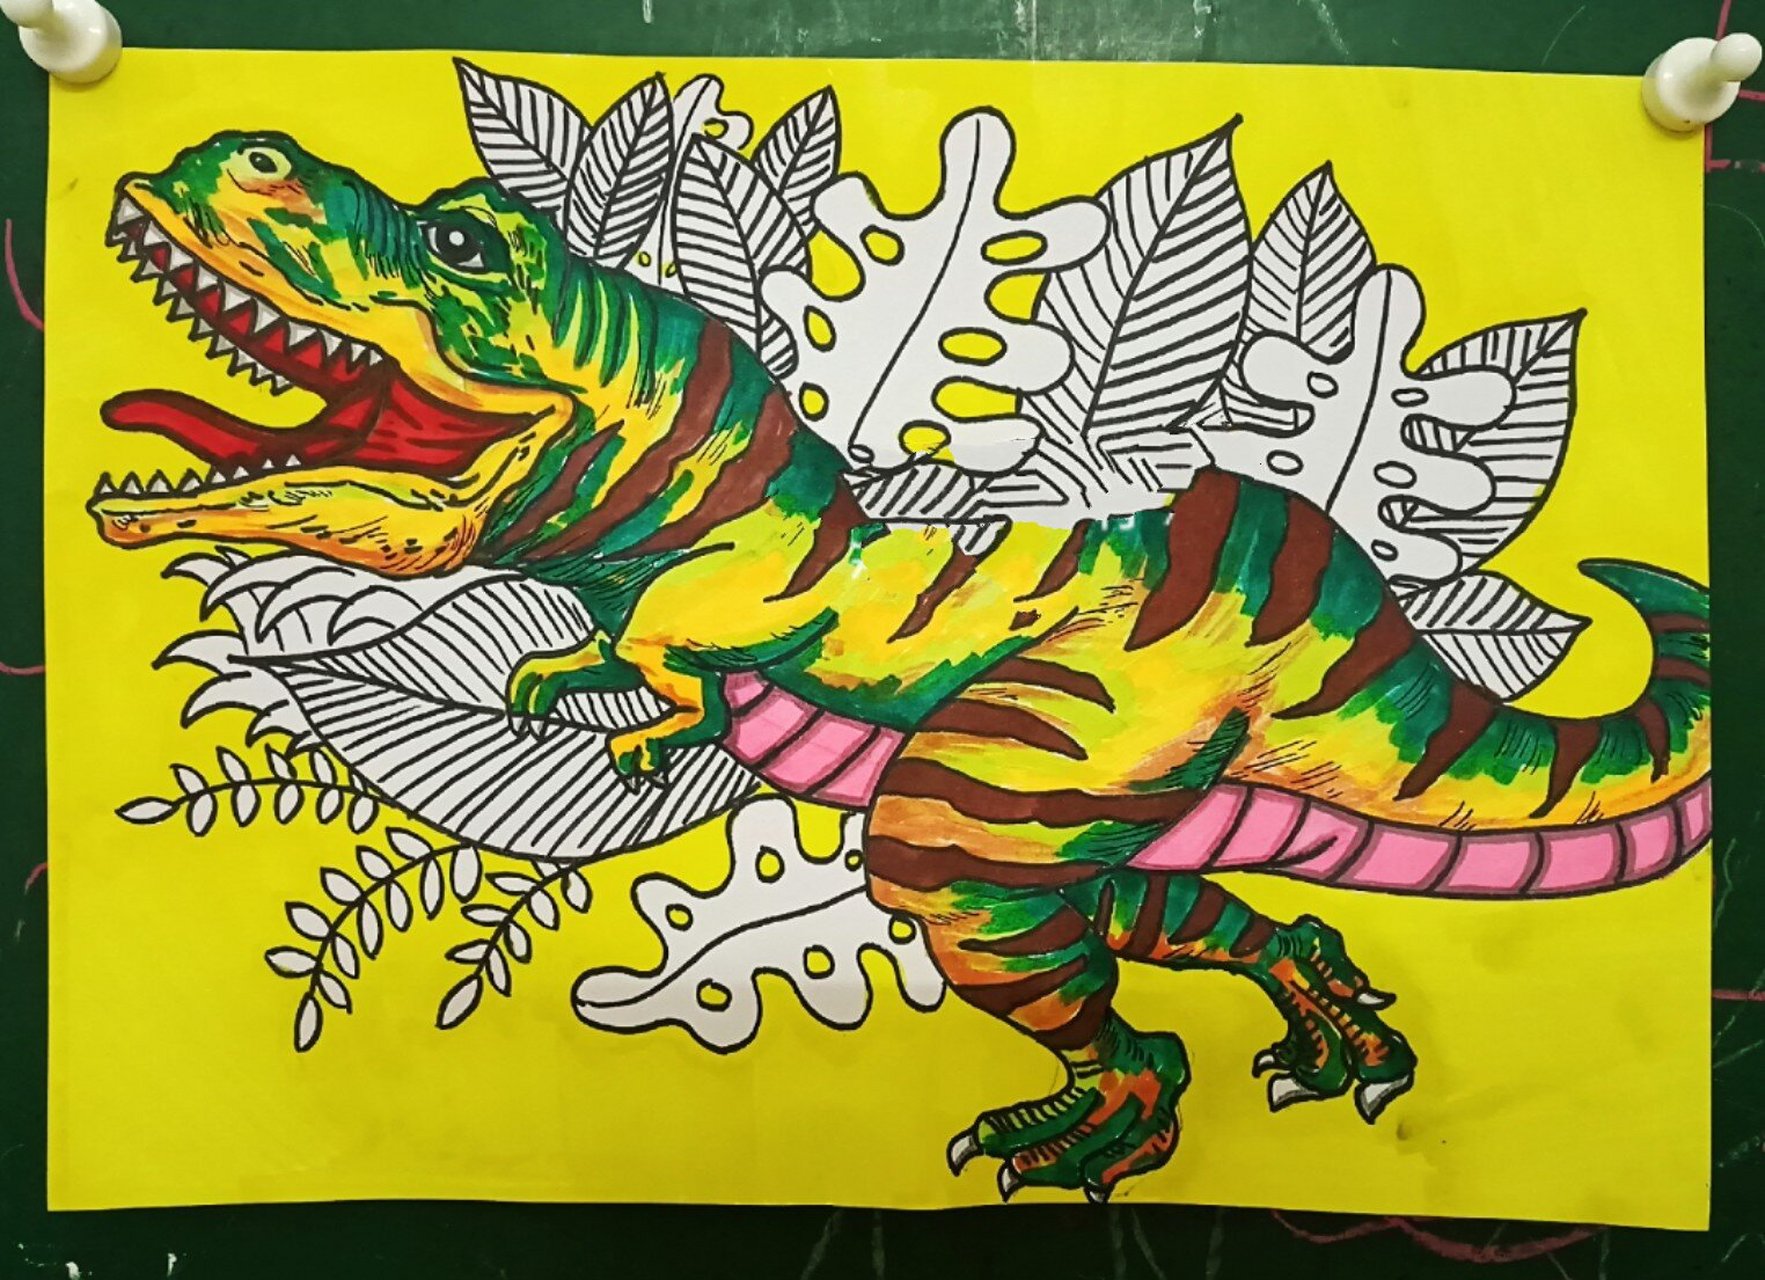 霸王龙儿童画恐龙简笔画线描暴龙少儿美术 早上刚刚上完的课,再发一下